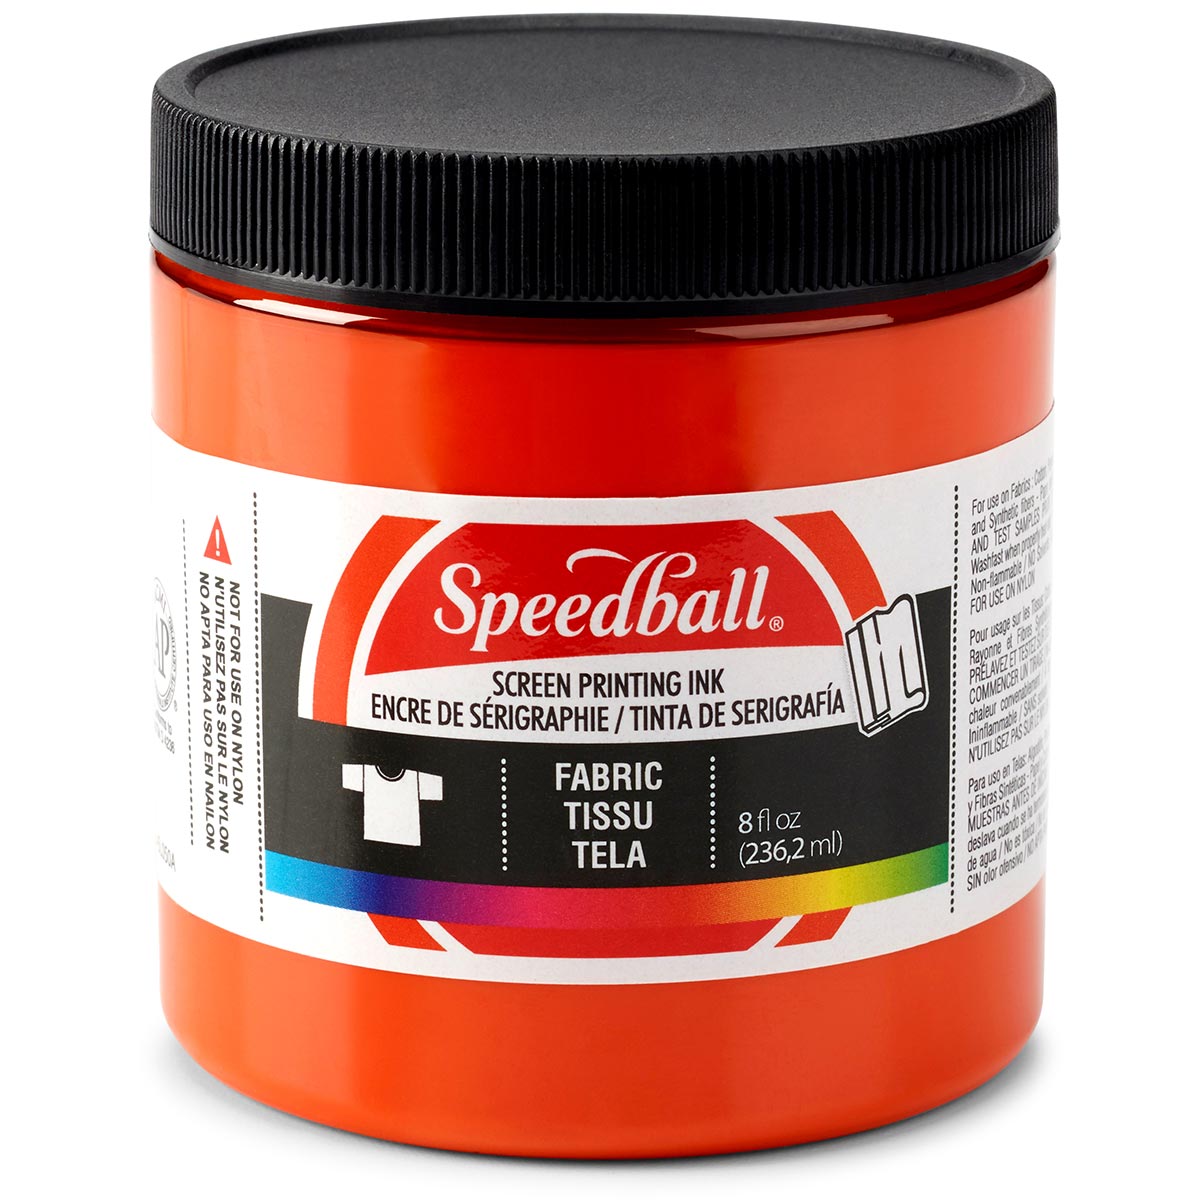 Speedball - Encre de sérigraphie pour tissu 236 ml (8 oz) - Orange